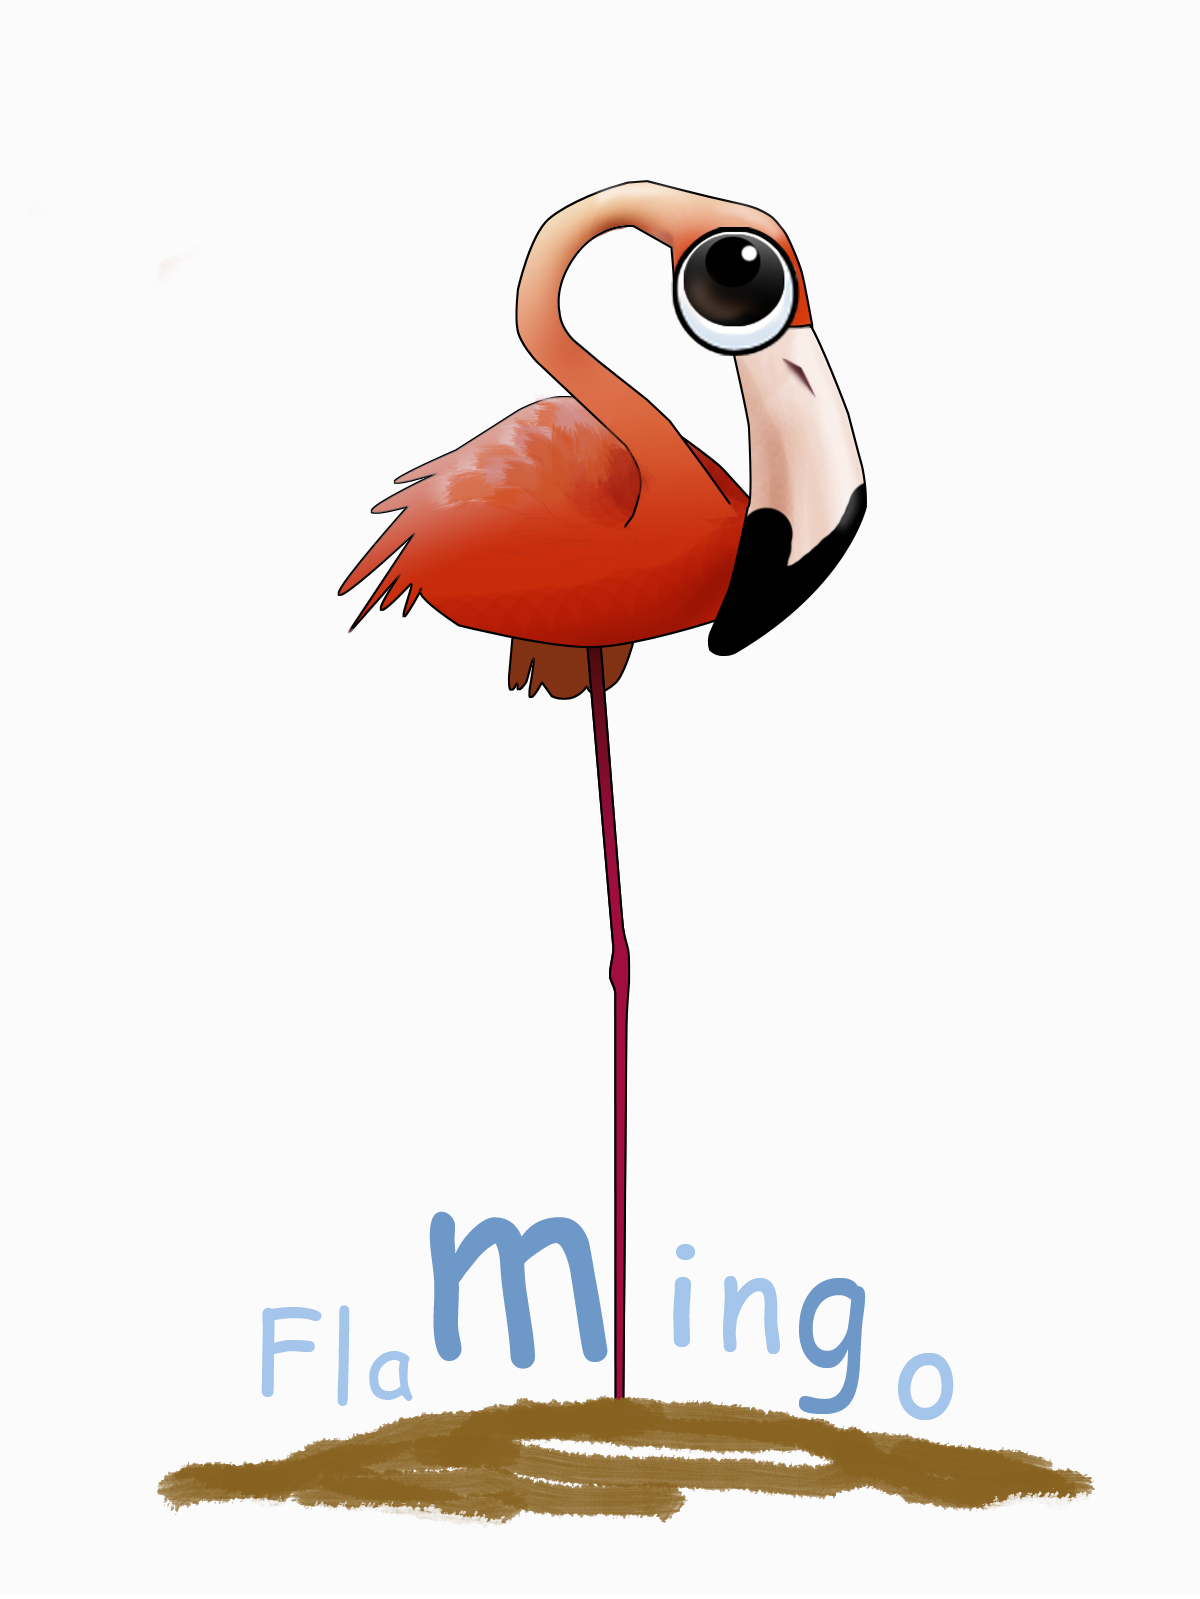 火烈鳥 Flamingo WebOS